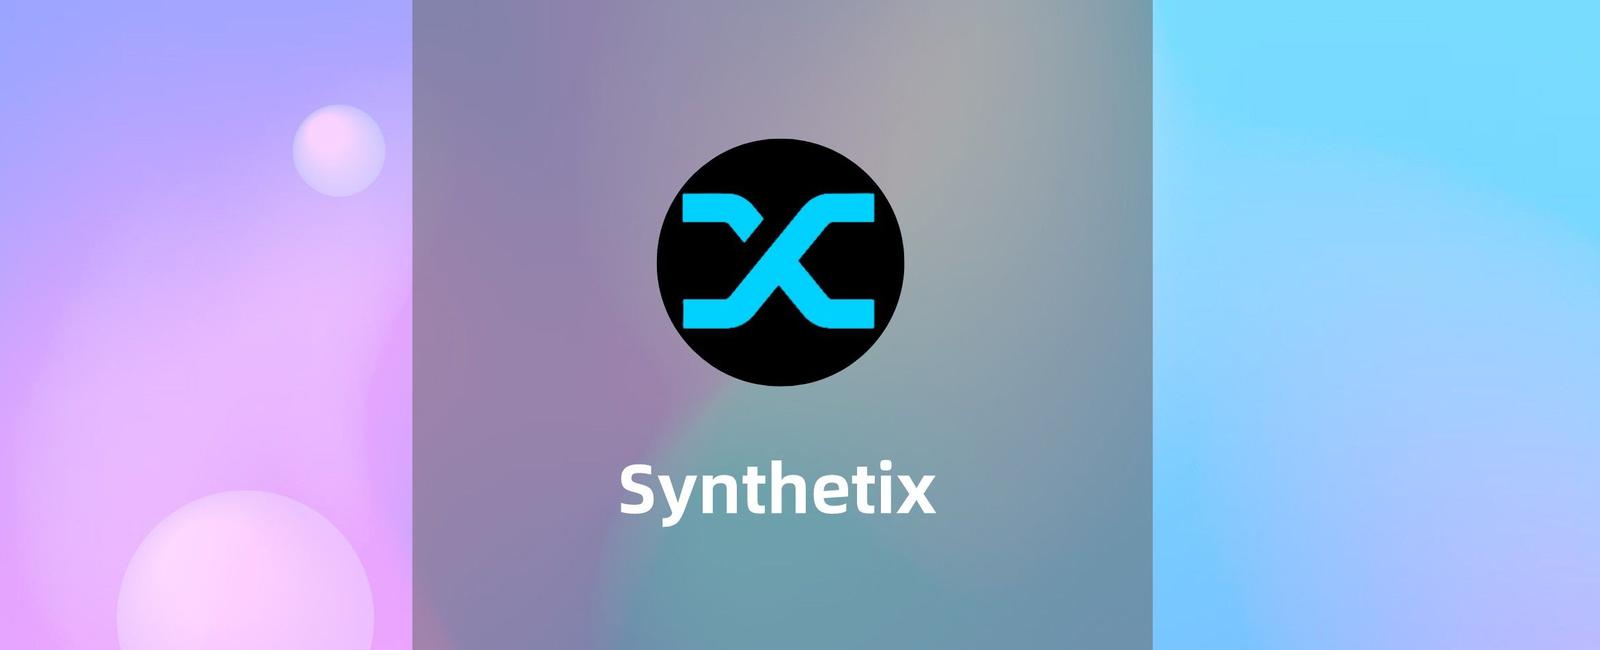 Synthetix教程:手把手教你Synthetix使用教程